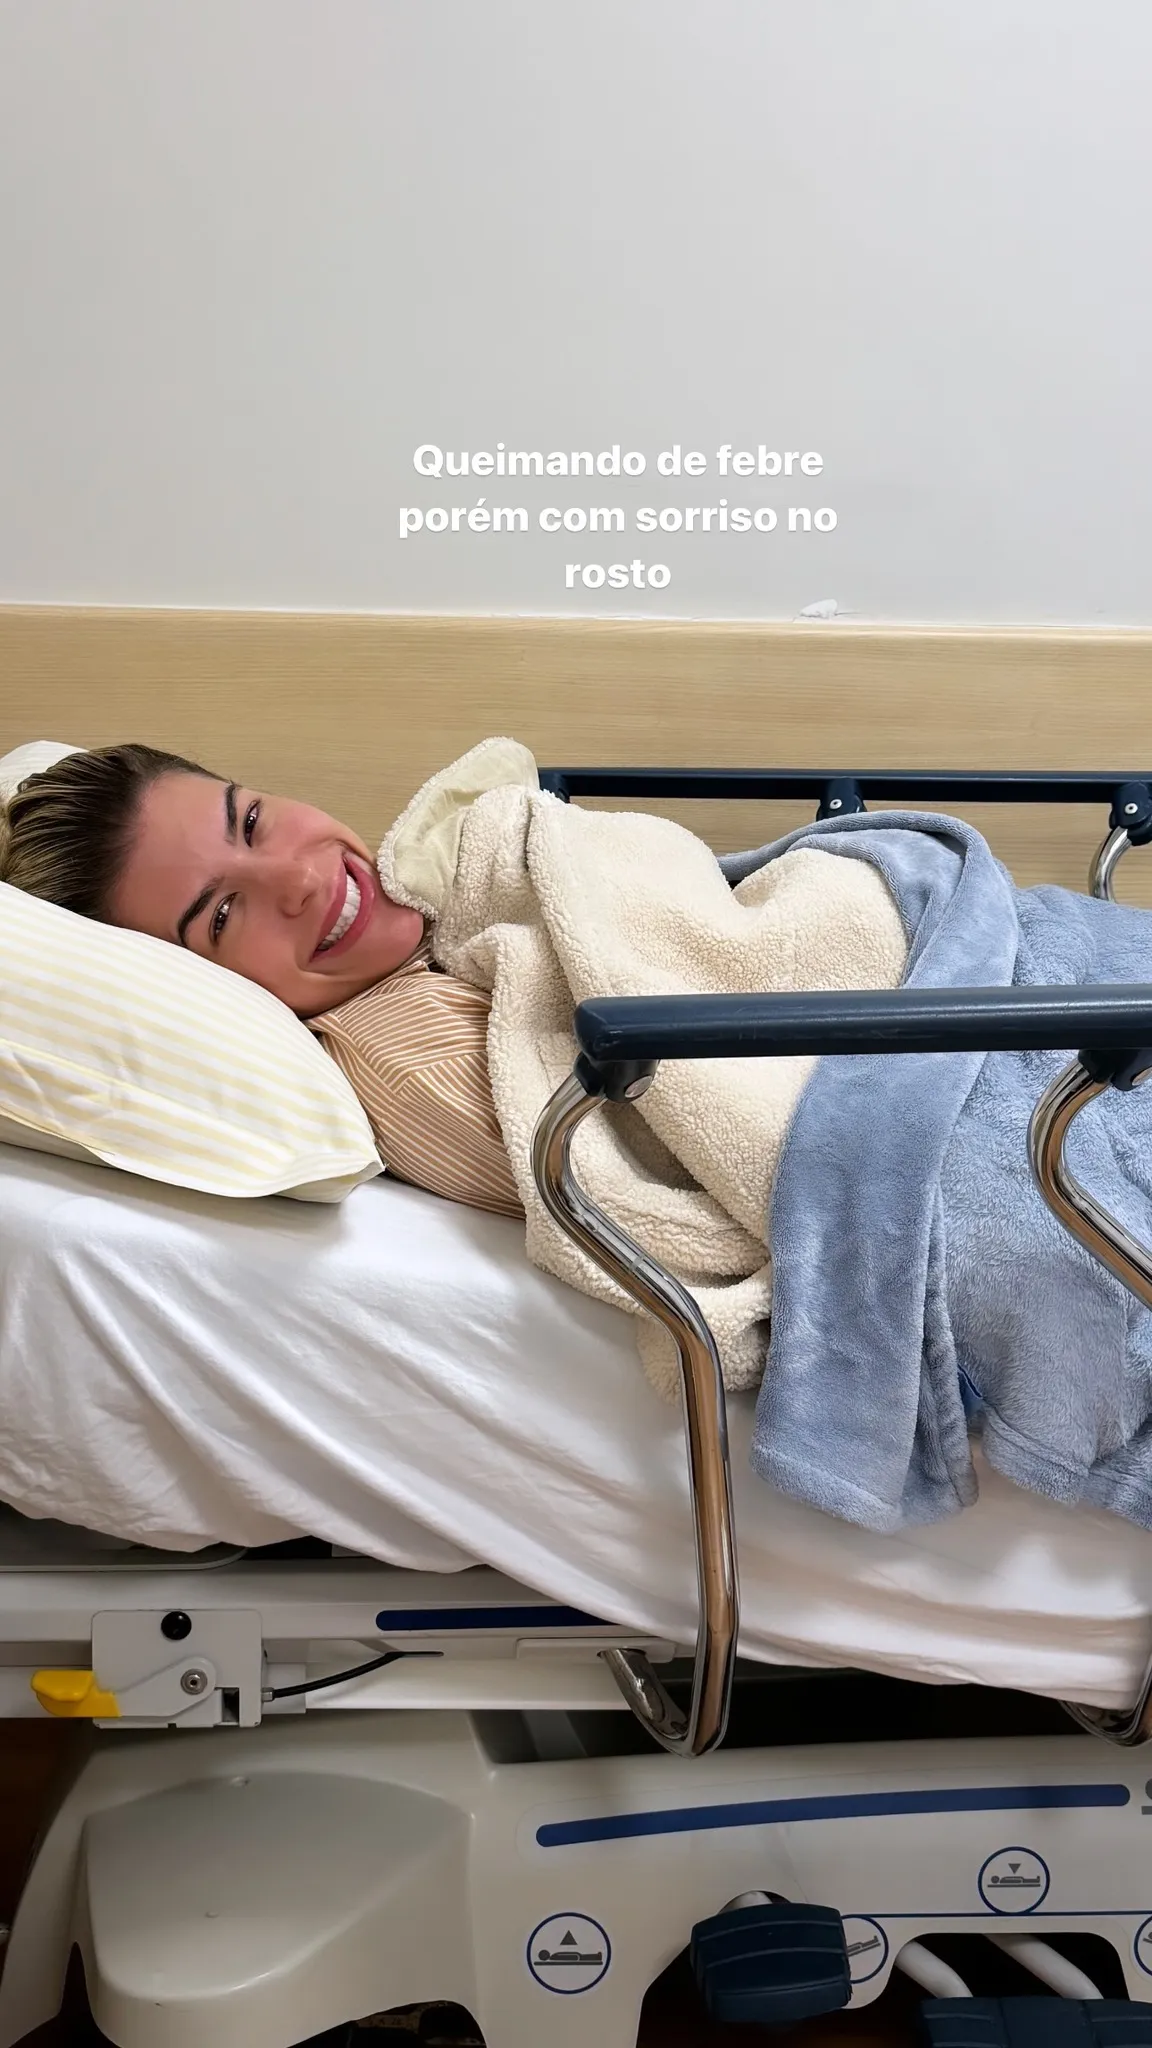 Imagem ilustrativa da imagem "Não foi ressaca", explica Lore Improta após parar no hospital